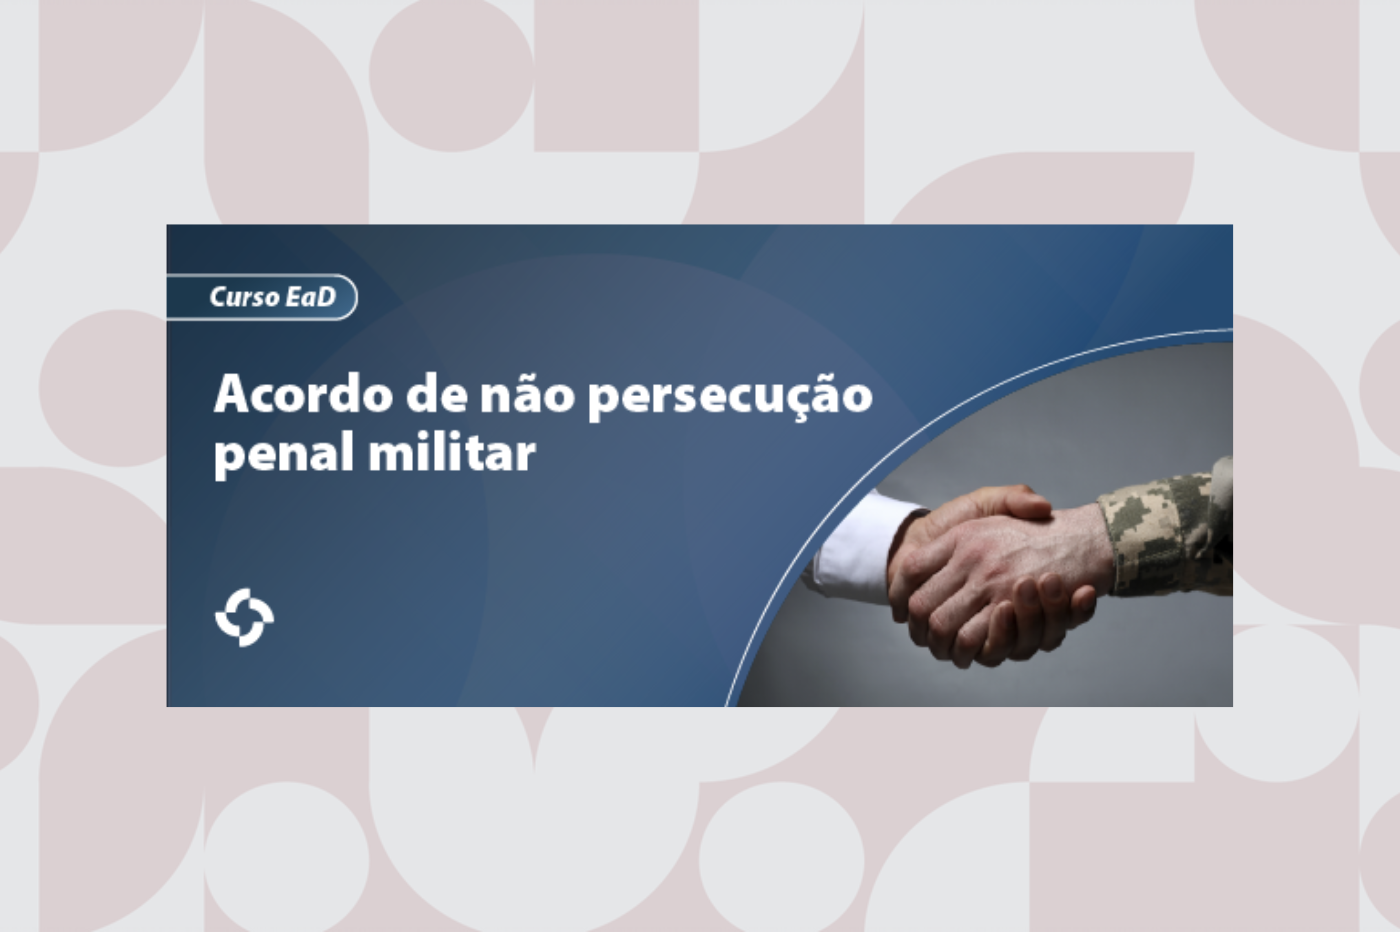 20_07_23_banner_noticia_curso_nao_persecucao_penal_militar.png - 376,45 kB